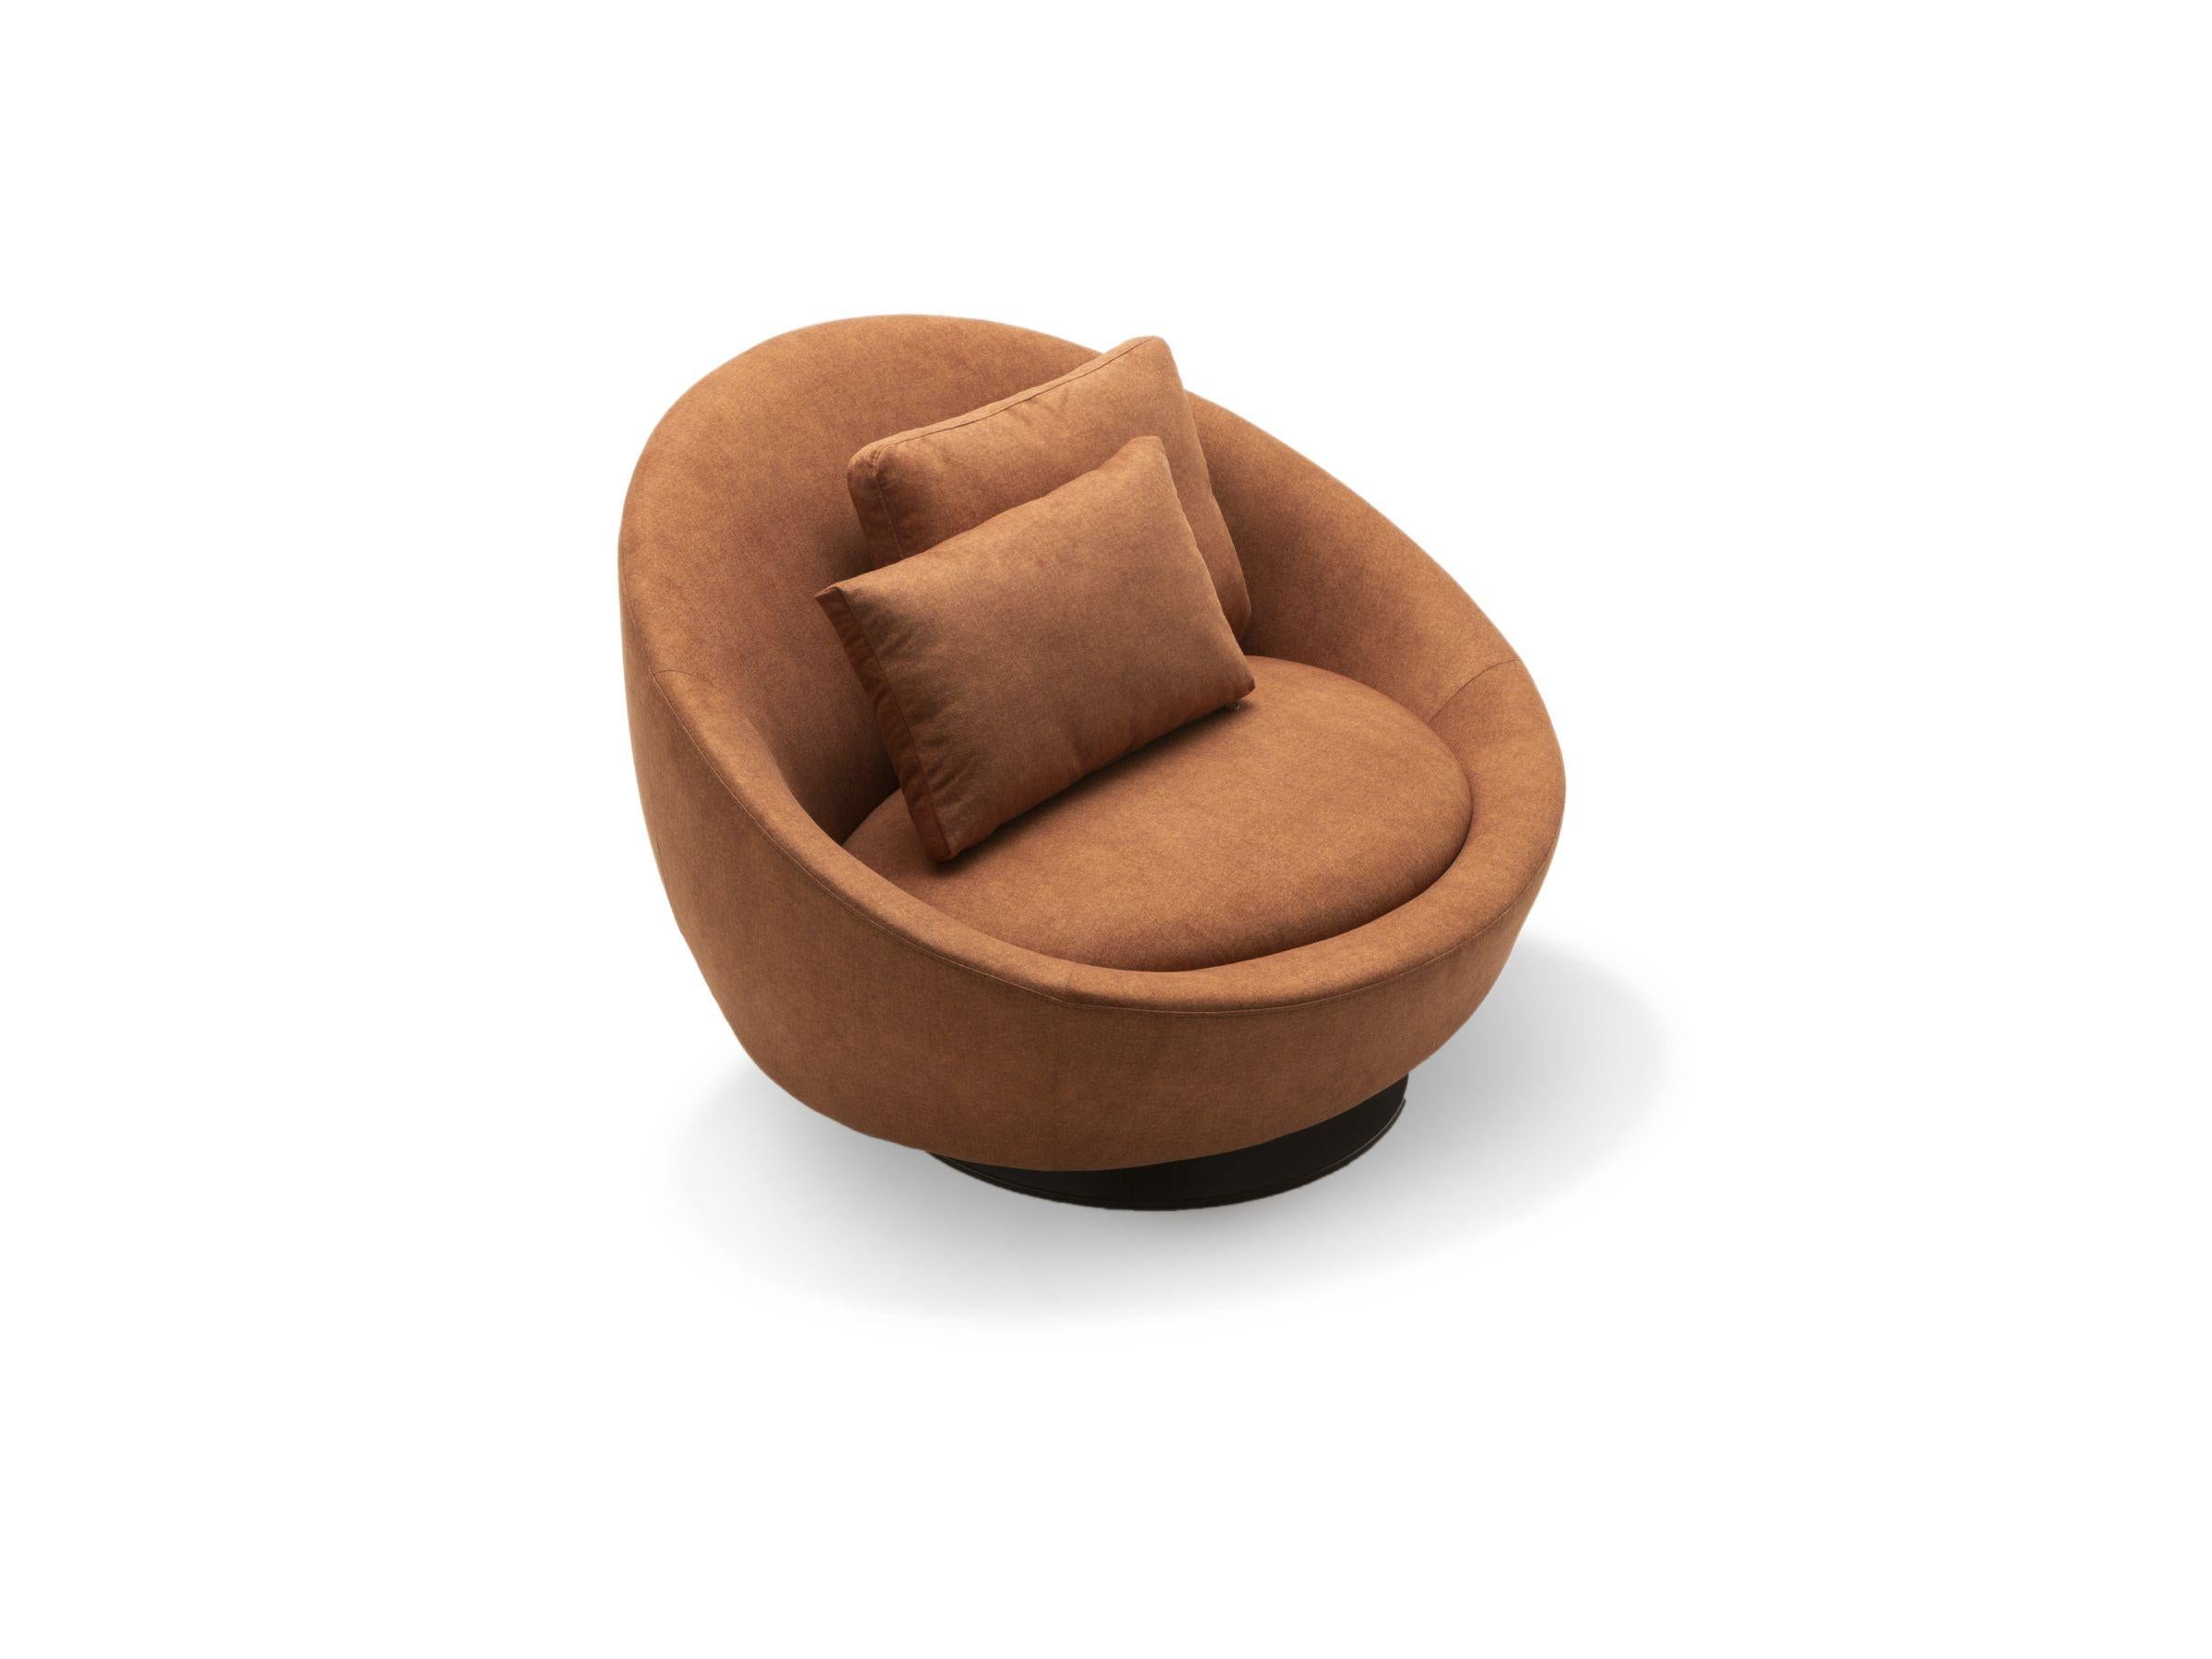 Die abgerundeten Linien des Arte Armlehnstuhls bereichern das zeitgenössische Design und bieten gleichzeitig den ultimativen Komfort. Mit seiner breiten und gemütlichen Sitzfläche für zwei Personen und seinen funktionellen, drehbaren Beinen ist der